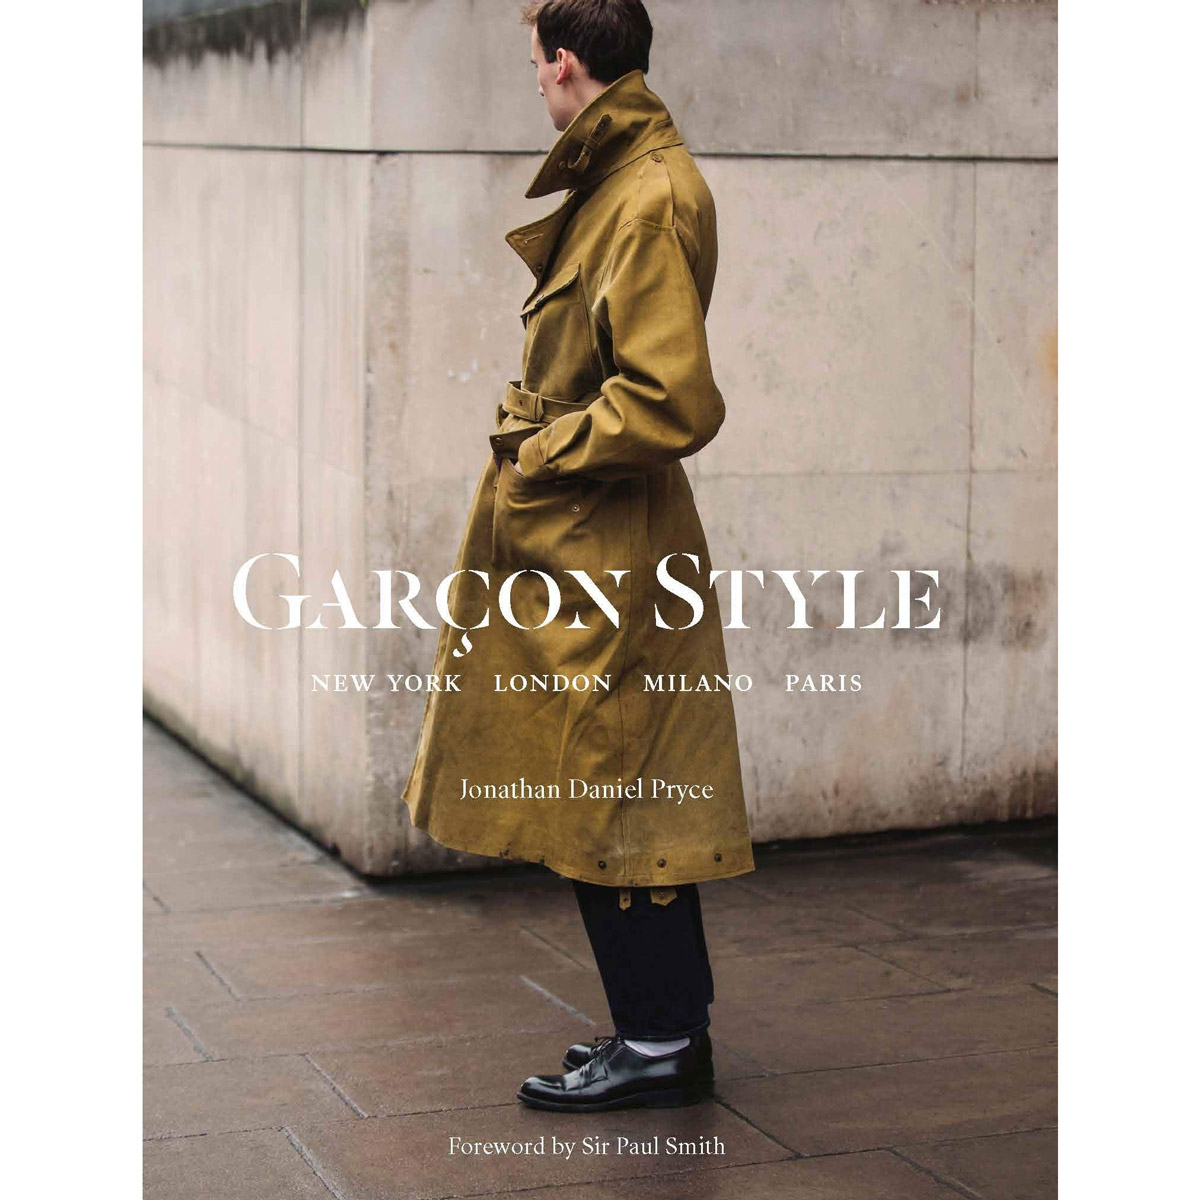 Garçon Style: New York, London, Milano, Paris